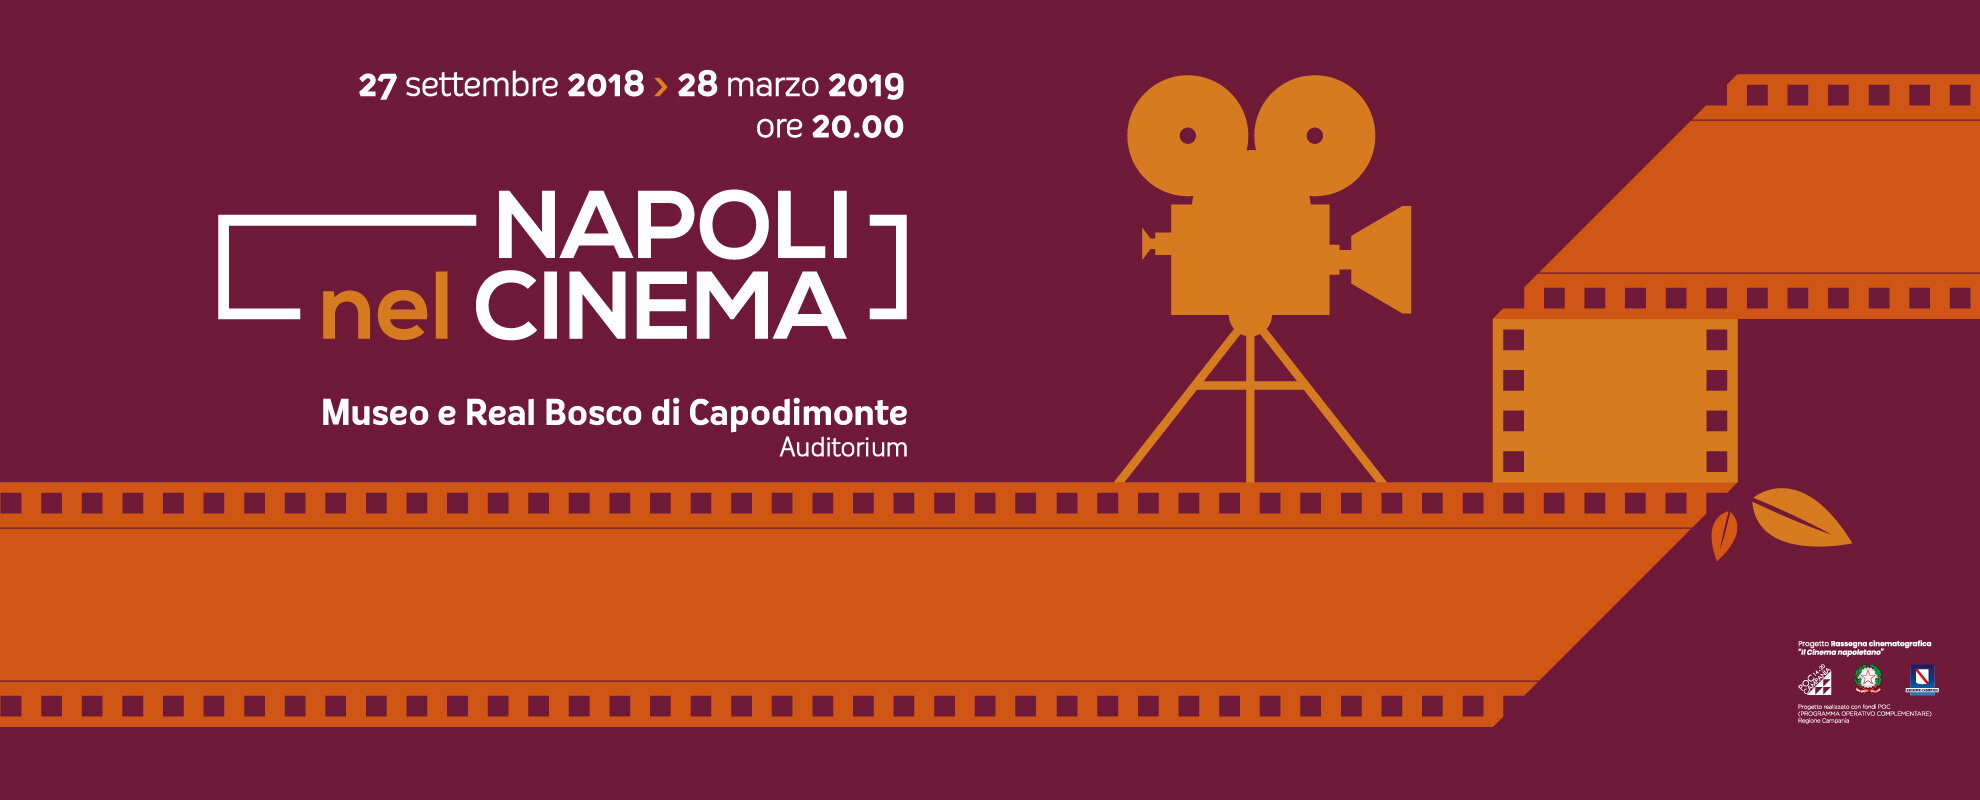 ‘Napoli nel Cinema’, la rassegna al Real Bosco di Capodimonte